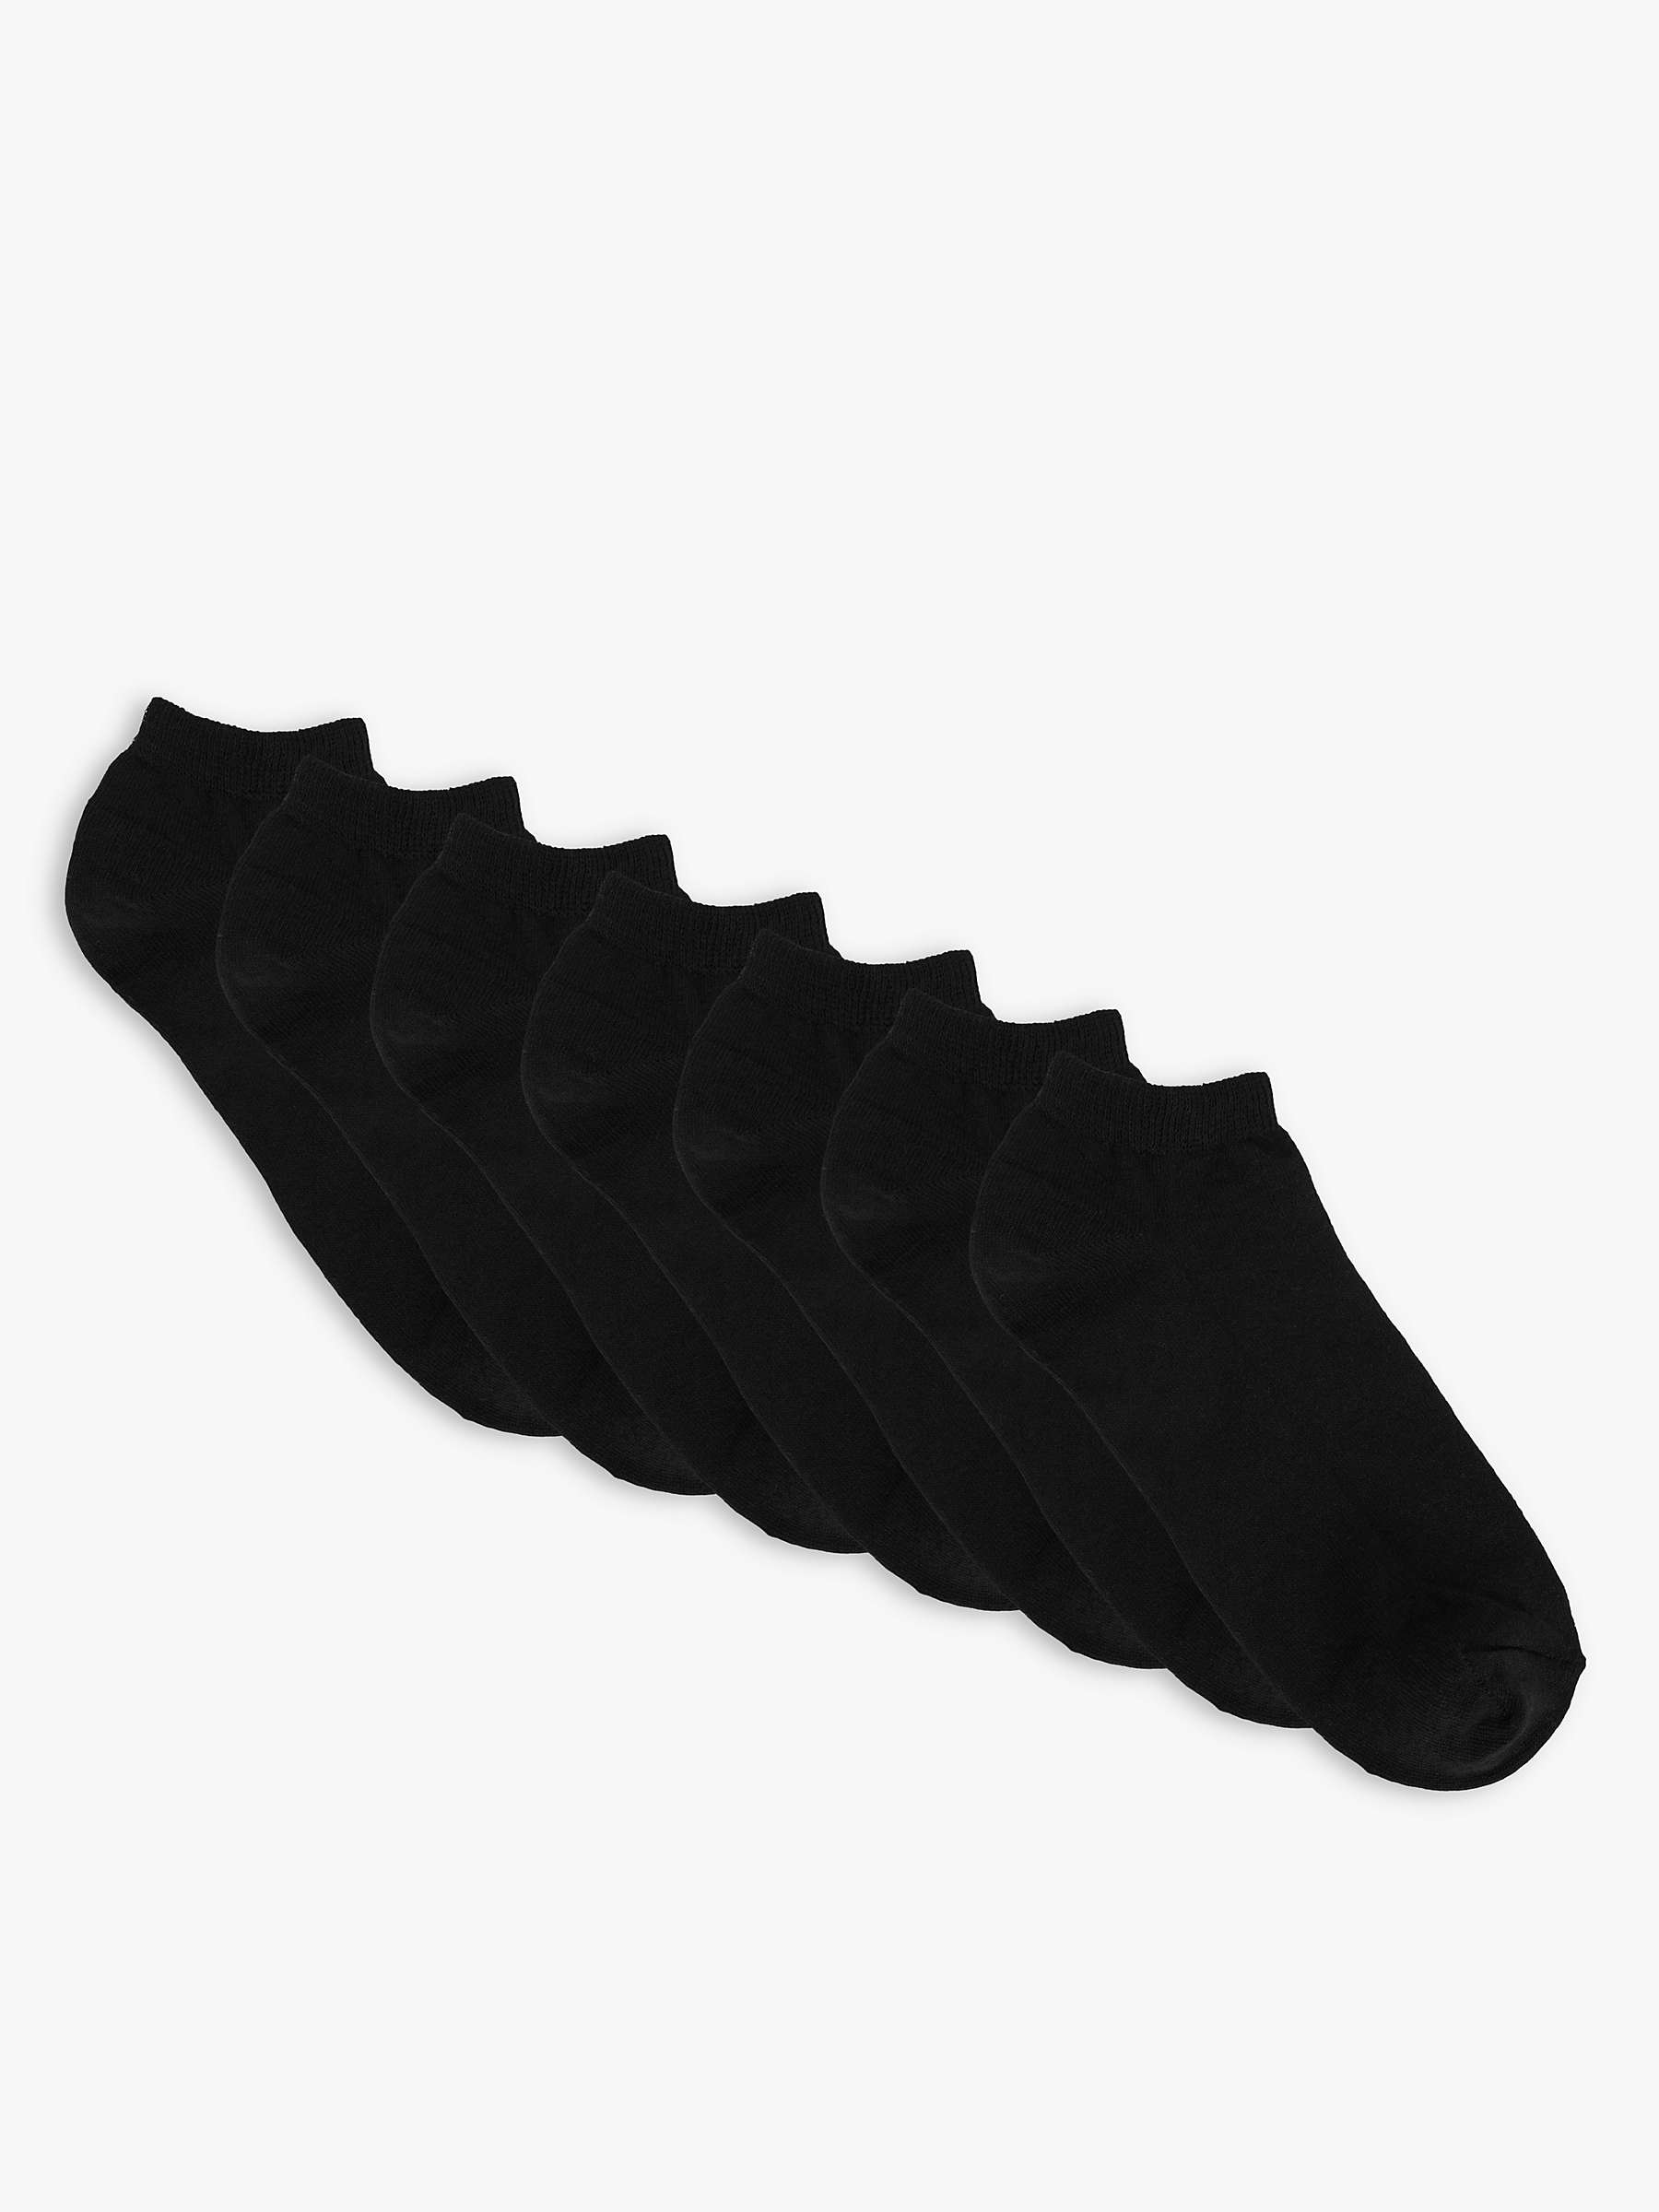 Buy John Lewis ANYDAY Men's Trainer Liner Socks, Pack of 7 Online at johnlewis.com